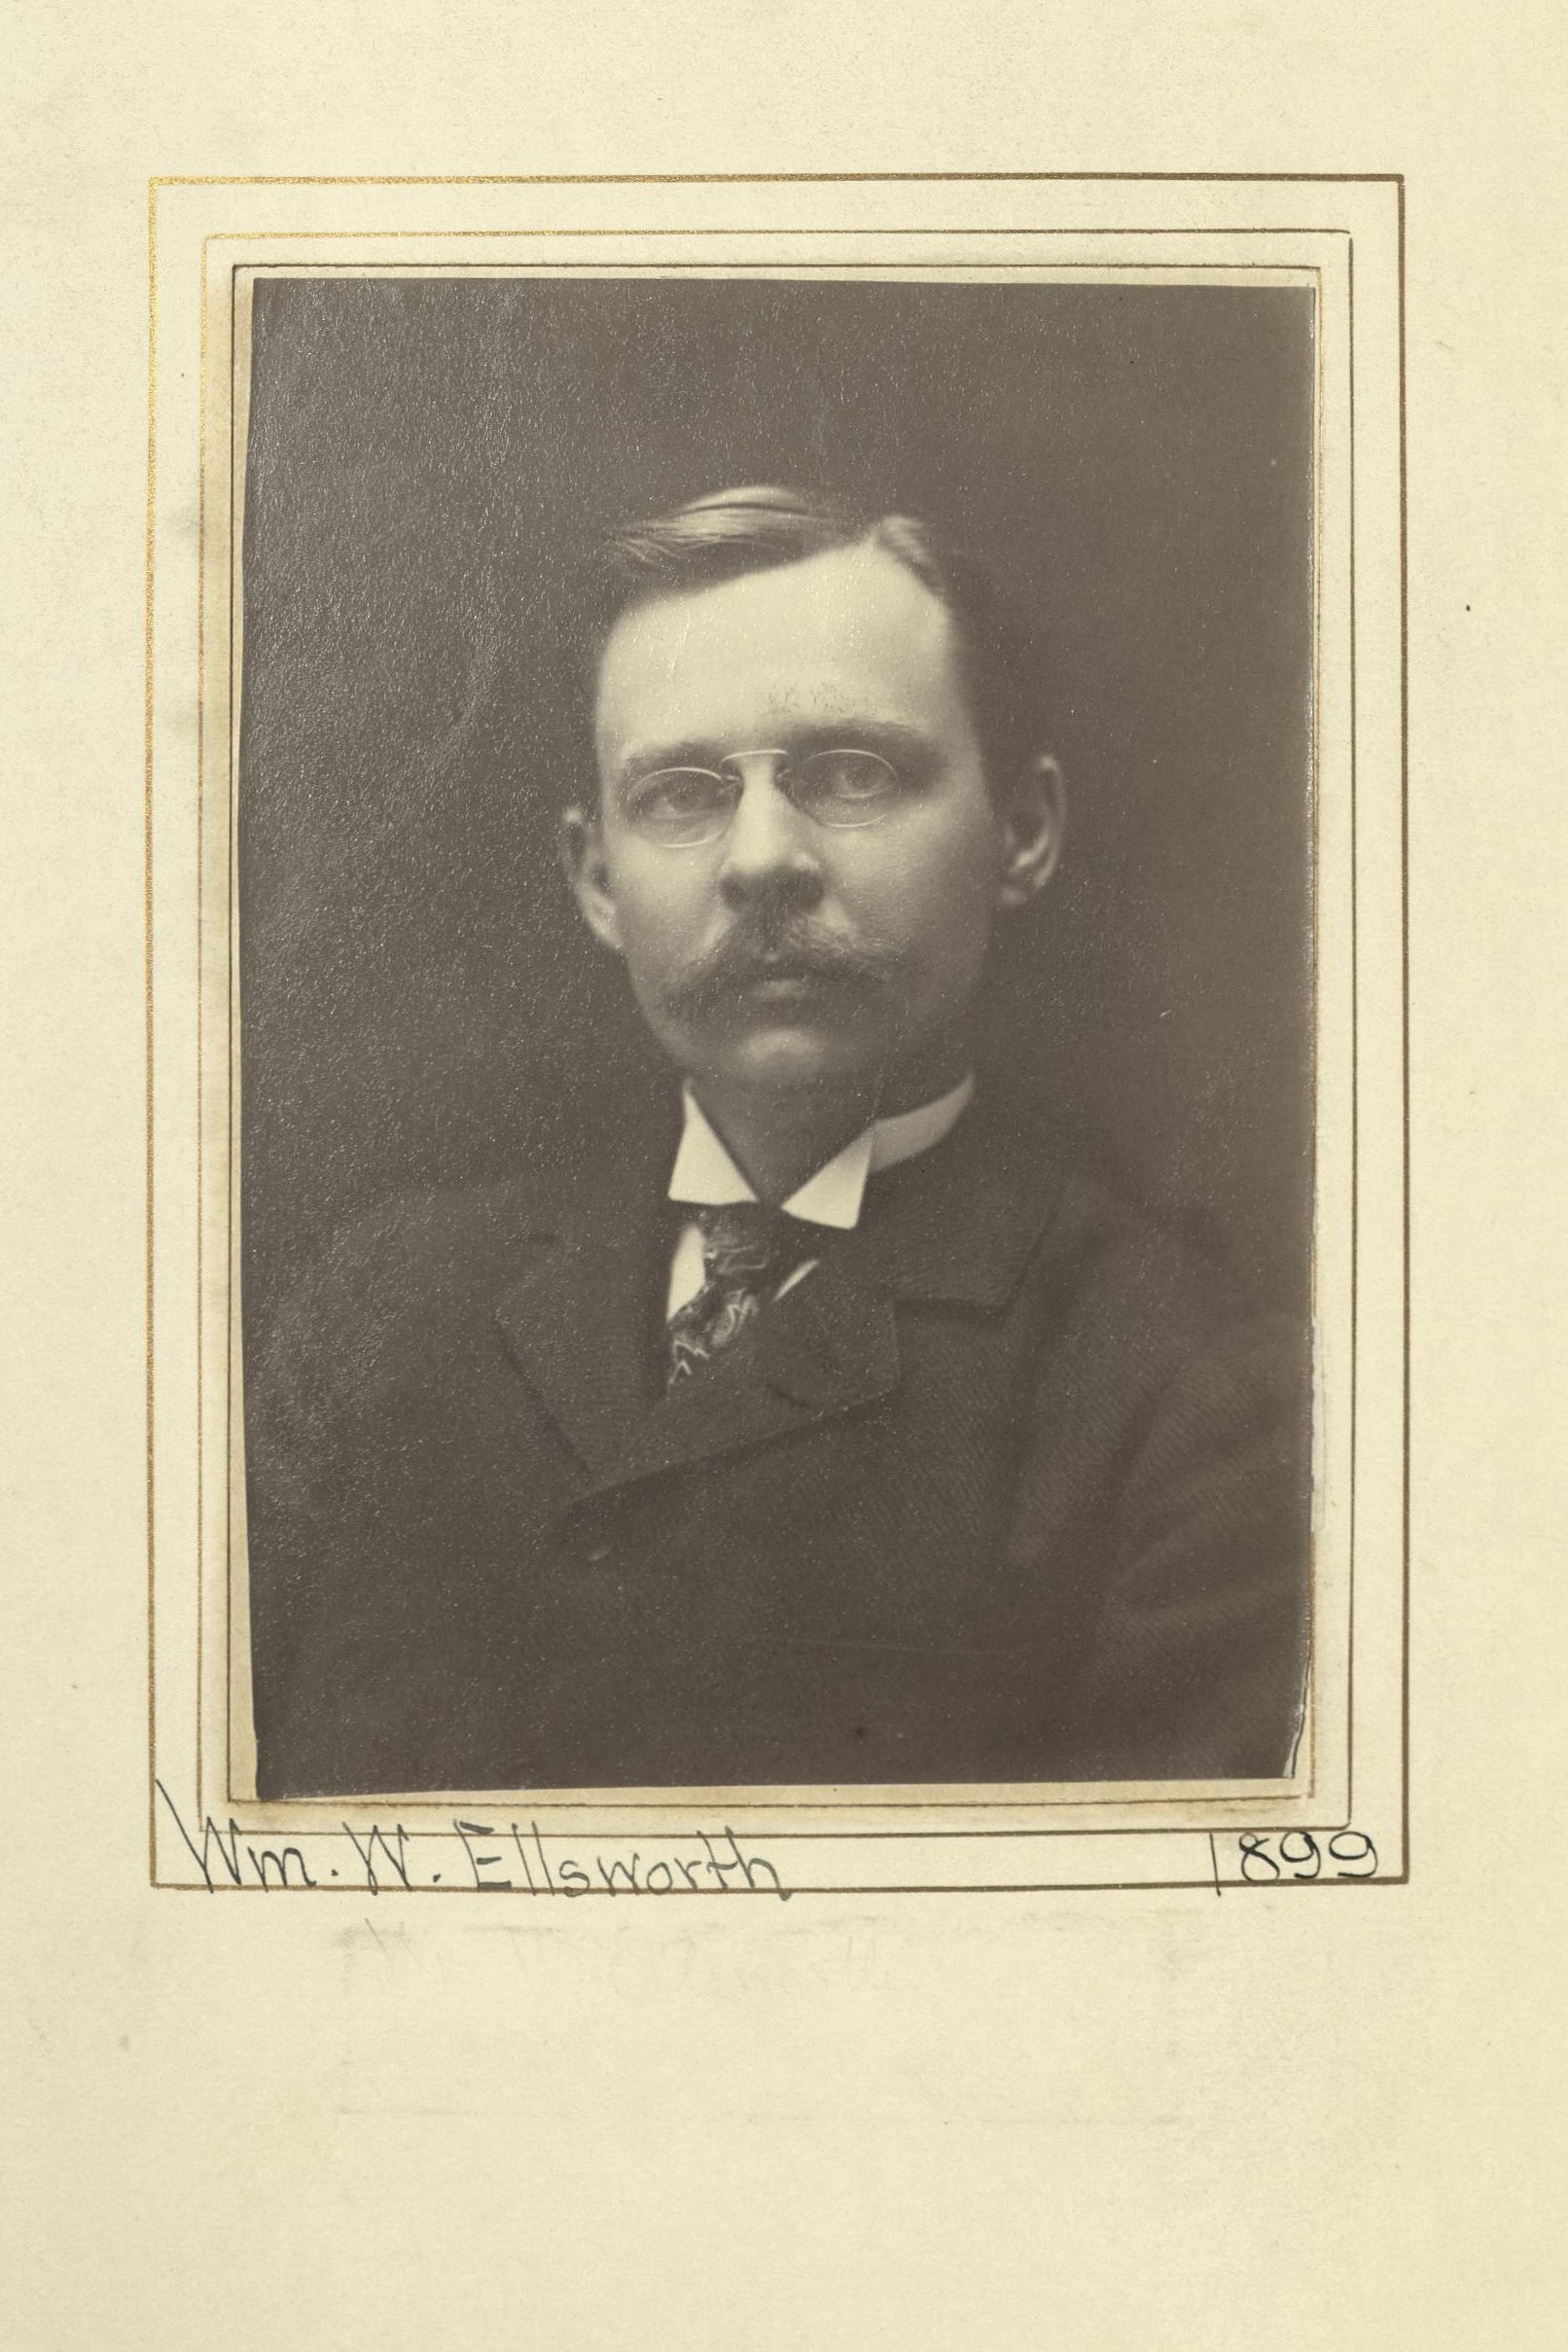 Member portrait of William W. Ellsworth